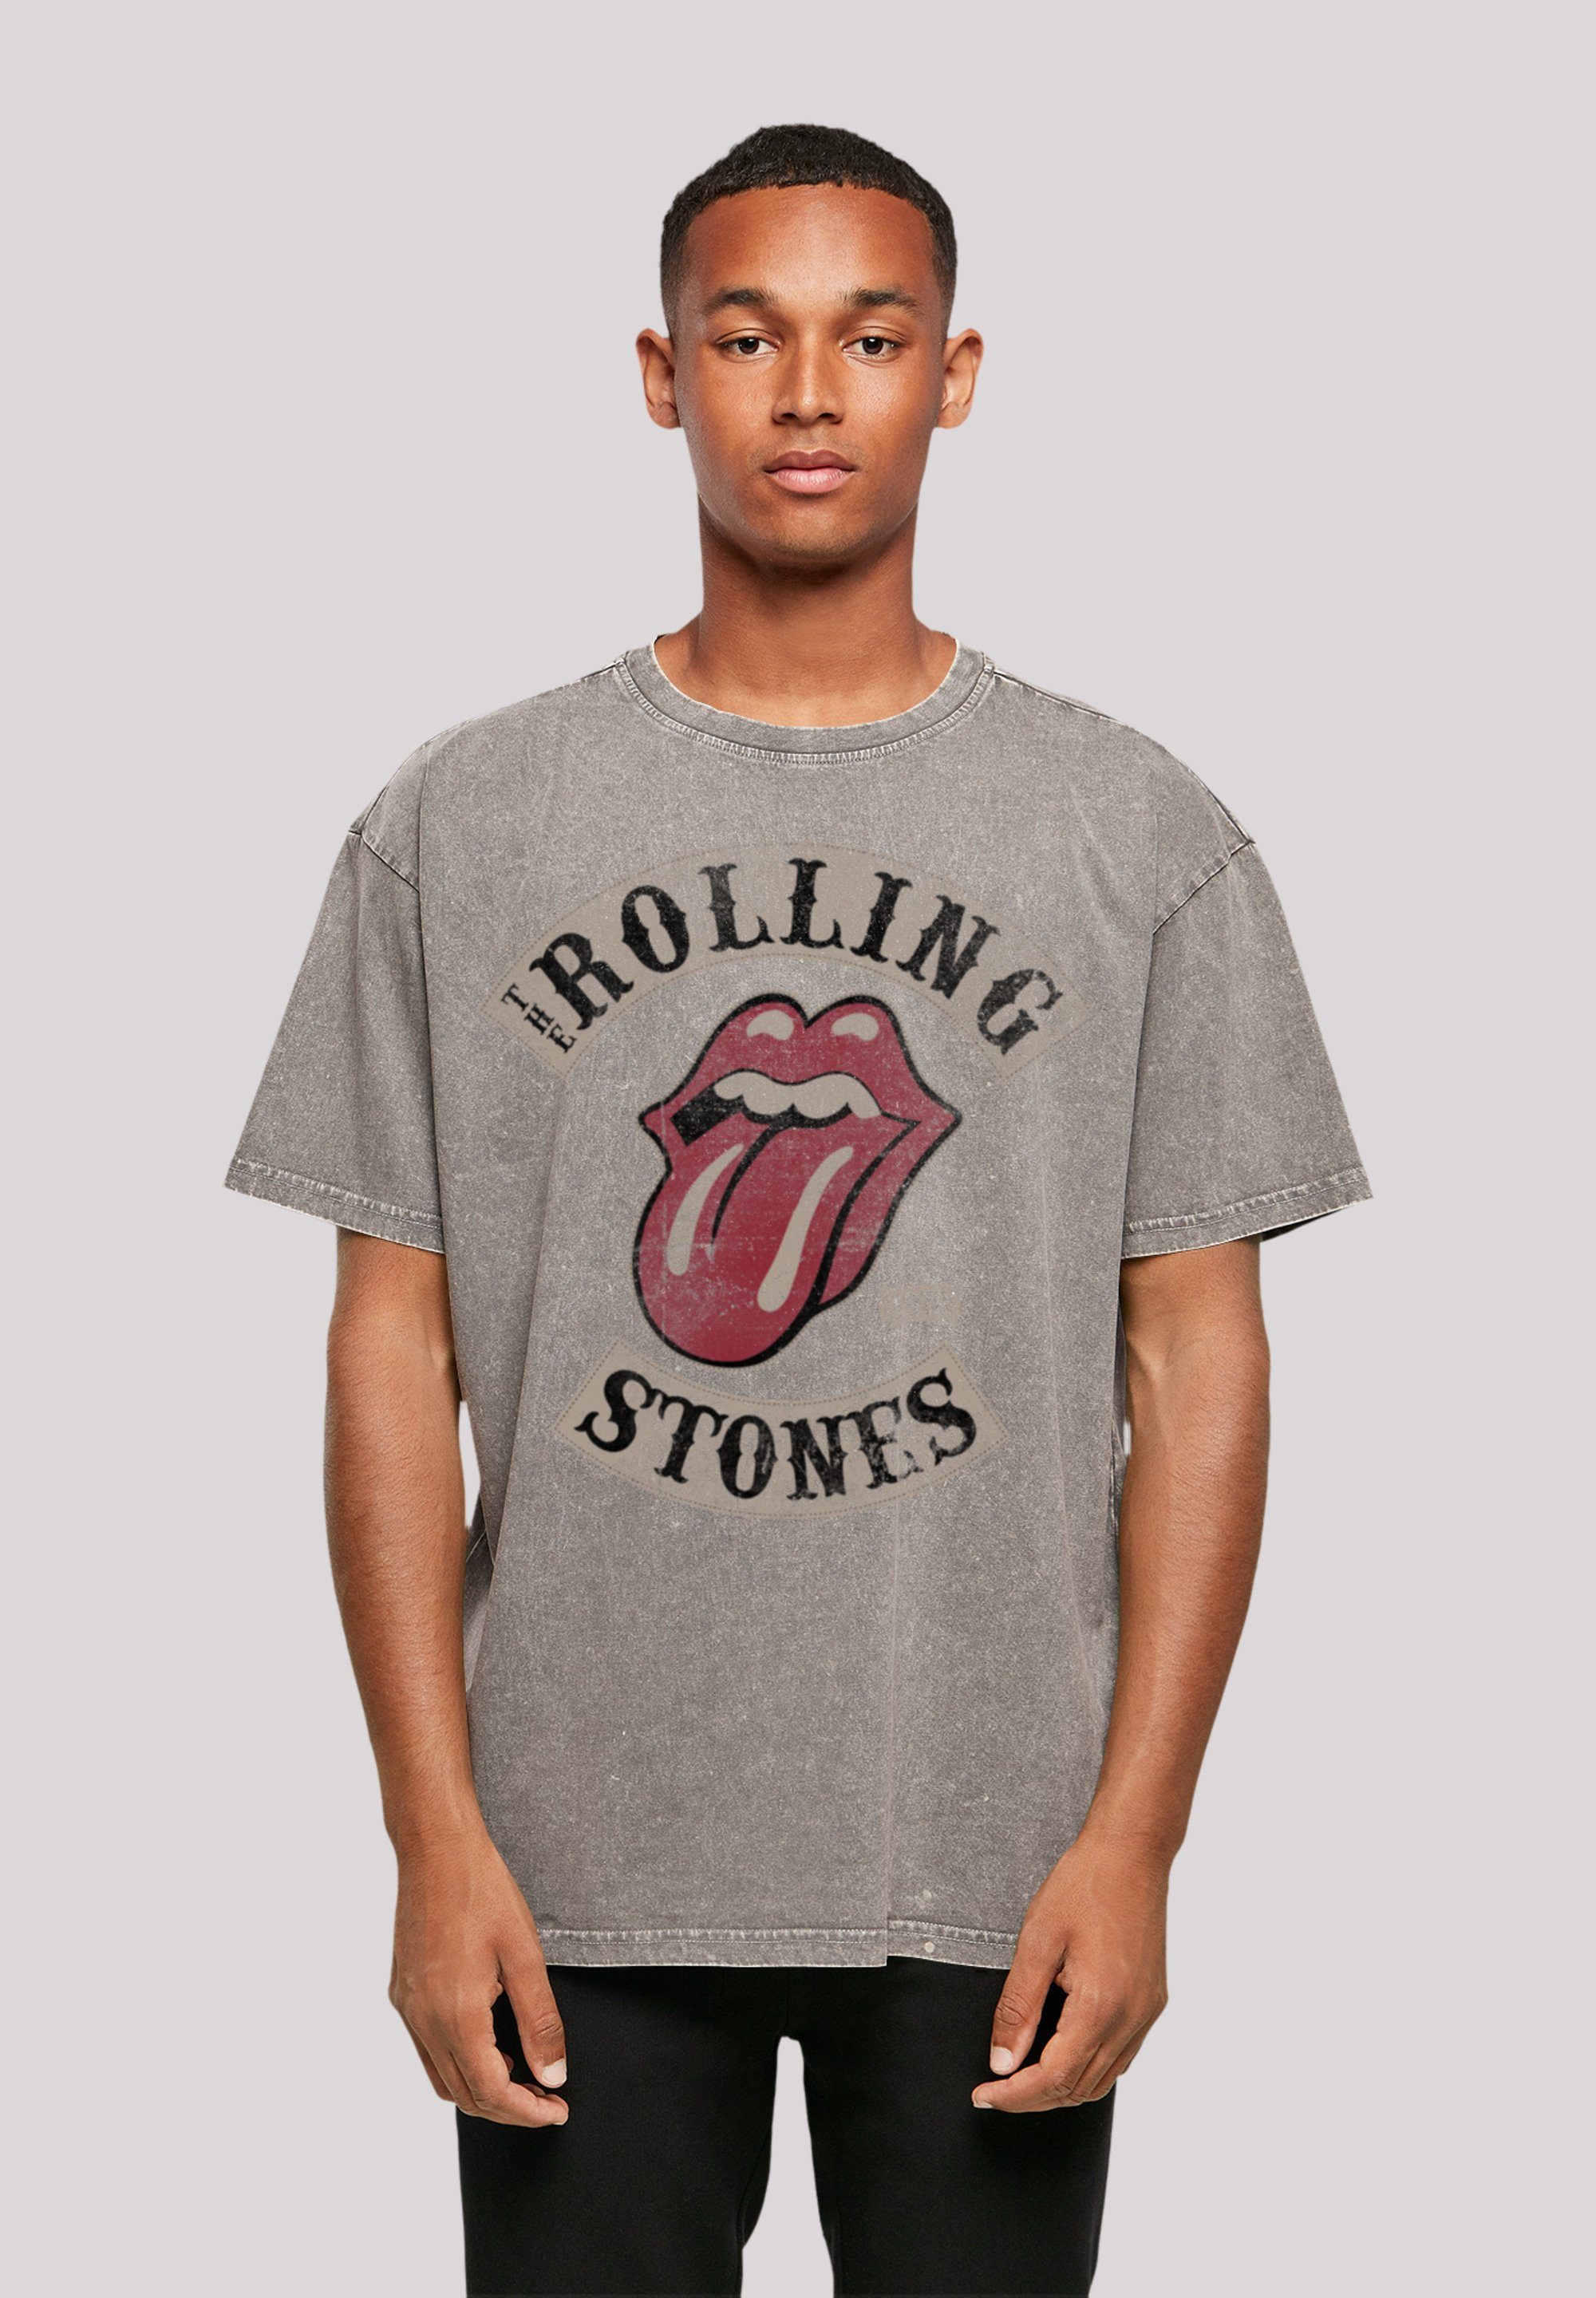 The F4NT4STIC bitte Stones \'78 Tour Rolling kleiner bestellen T-Shirt eine Fällt aus, weit Print, Größe